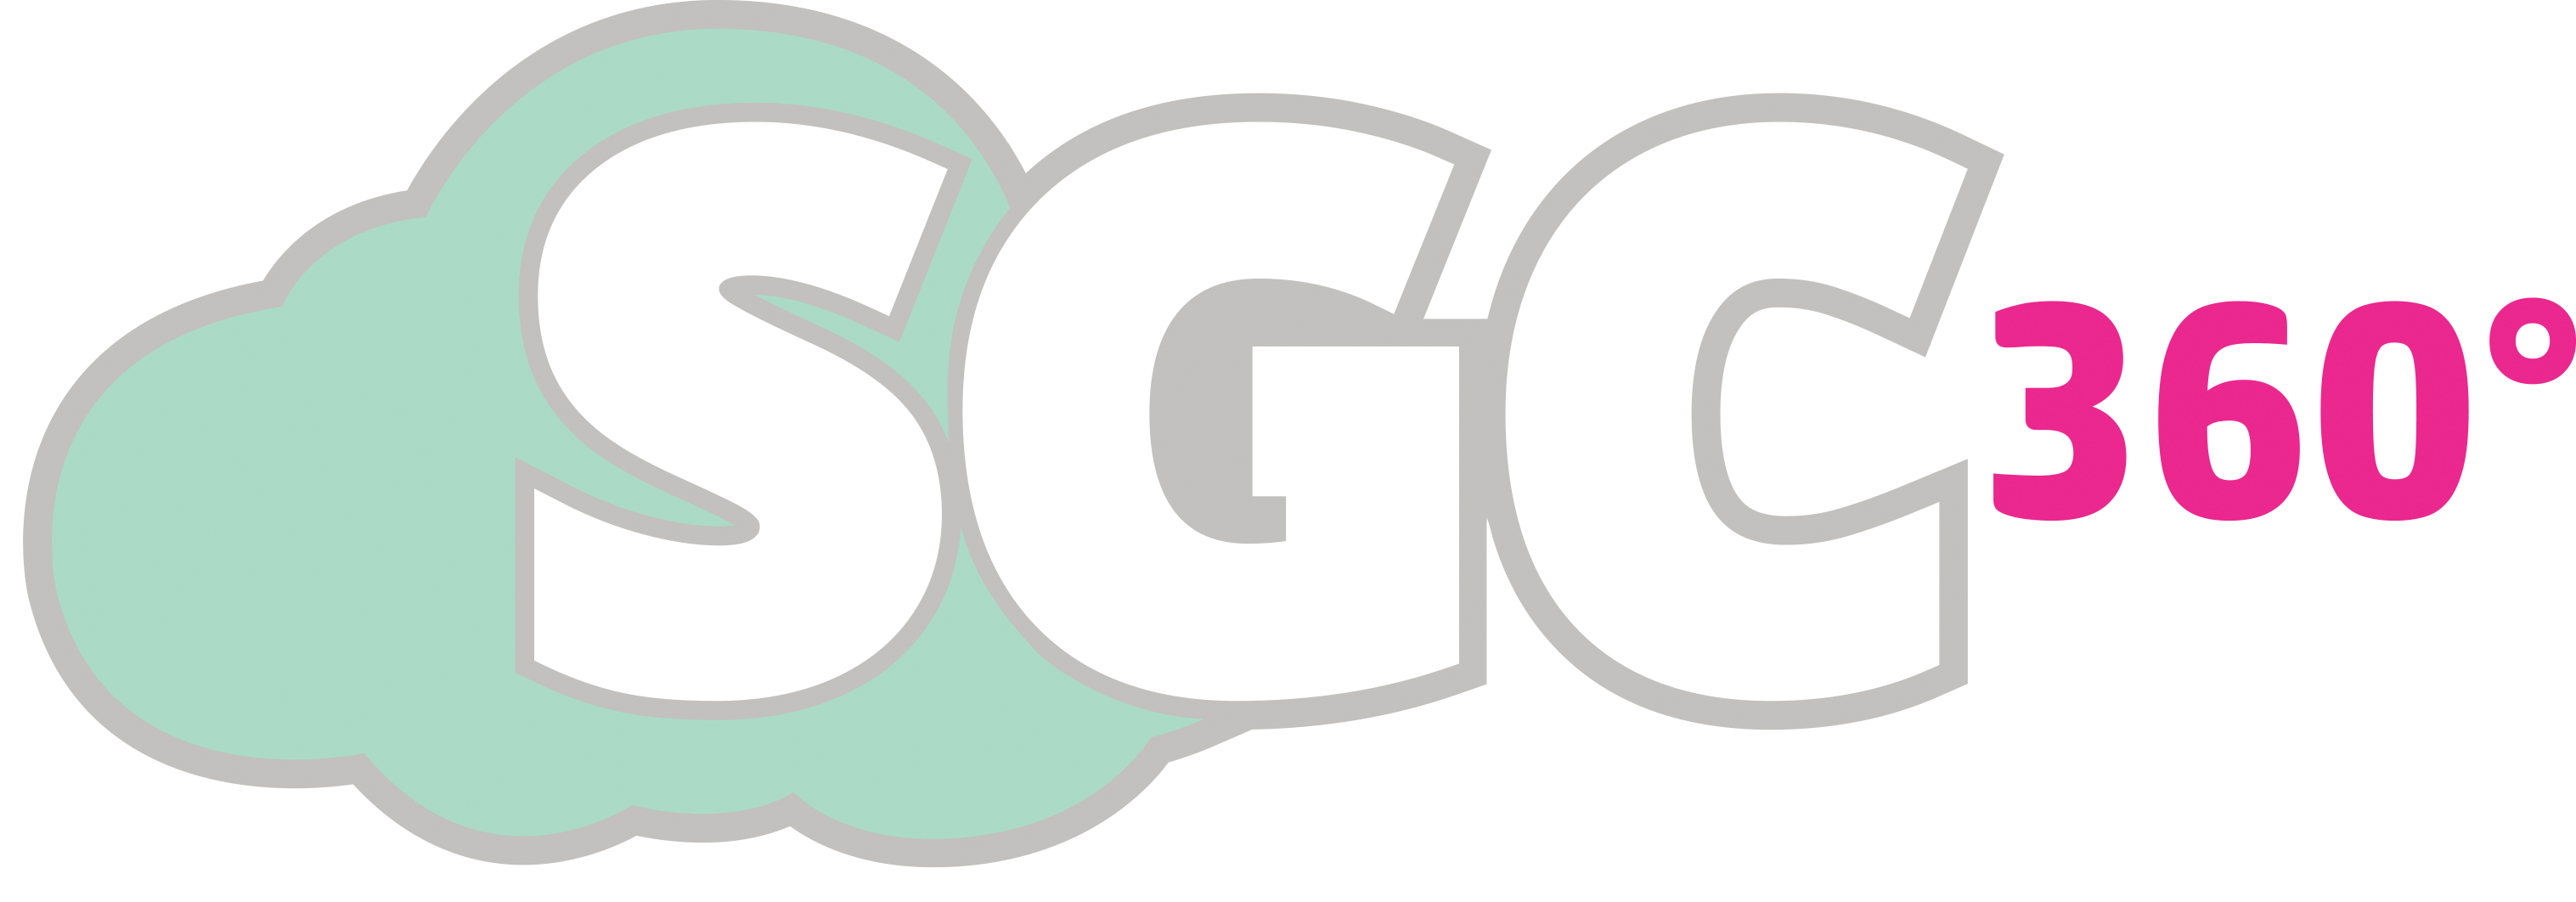 SGC360